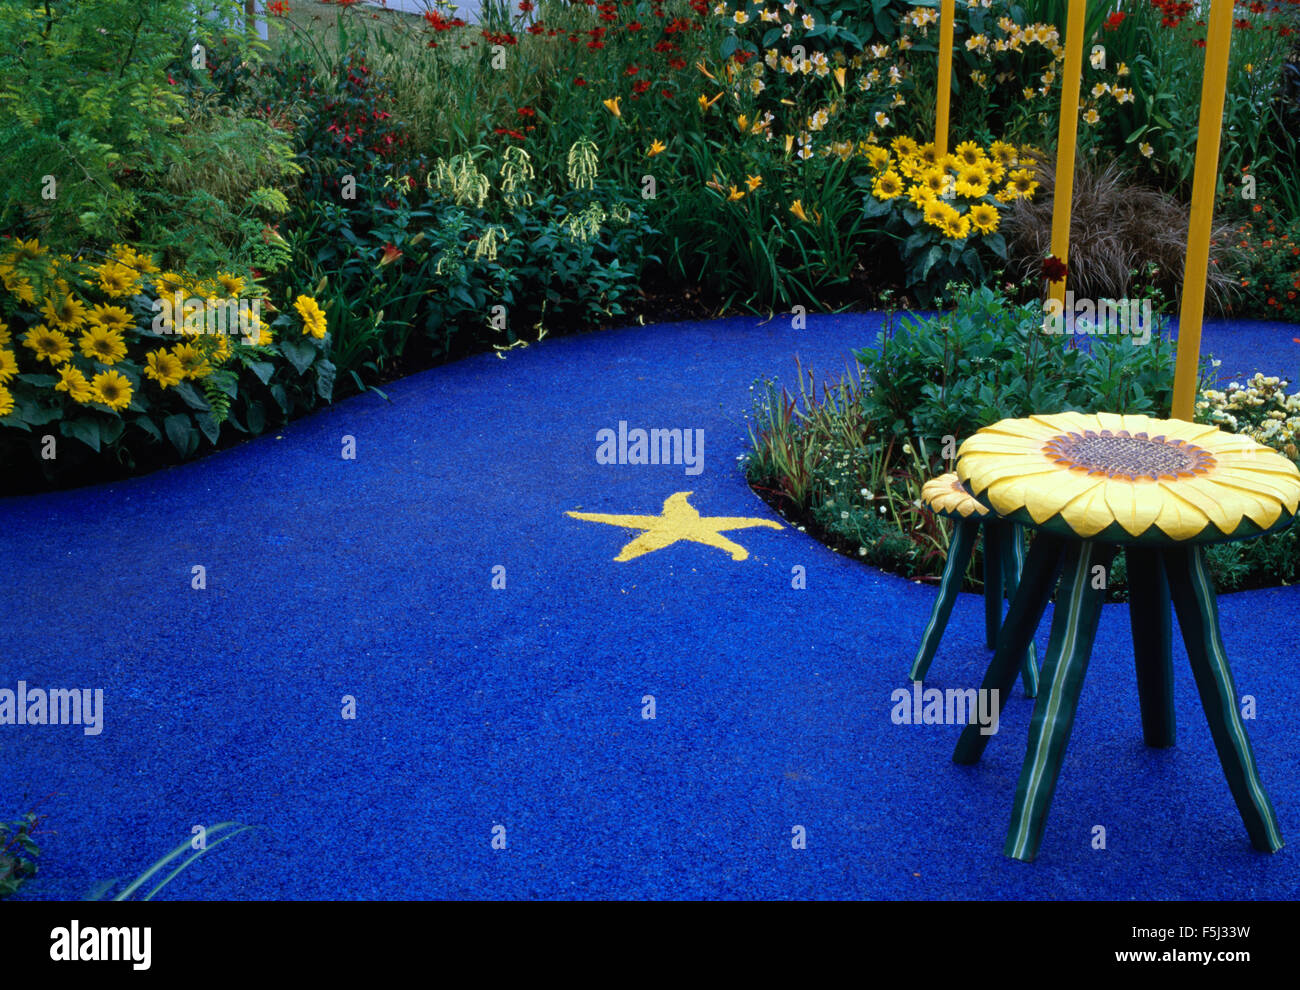 Tabourets en forme de tournesol sur un patio circulaire bleu vif avec tournesols jaunes en bordure Banque D'Images